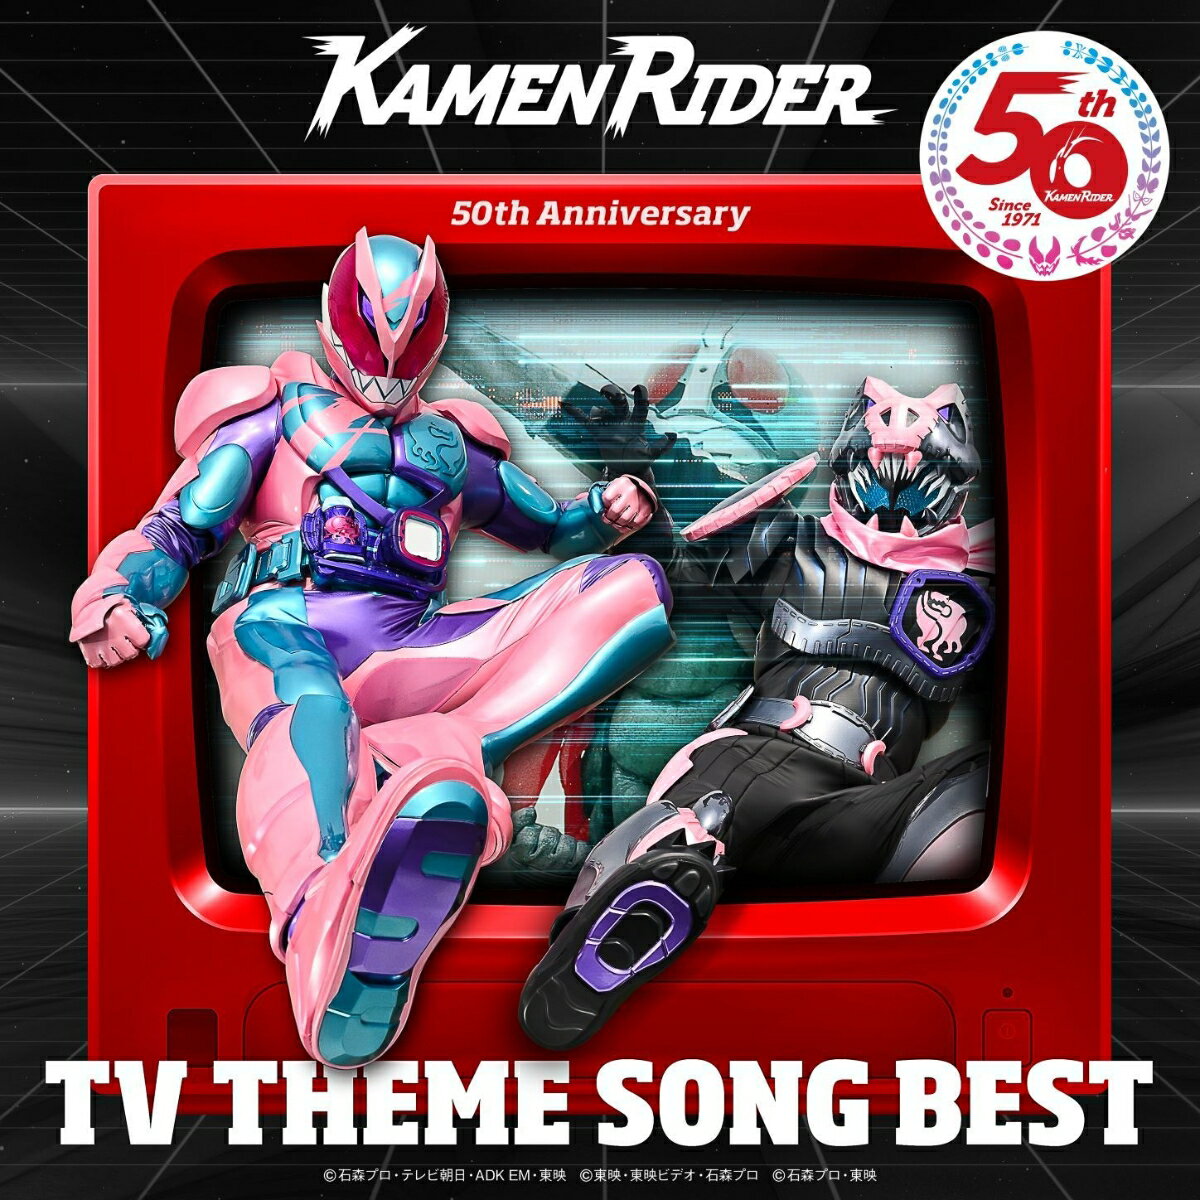 仮面ライダー 50th Anniversary TV THEME SONG BEST【CD5枚組】